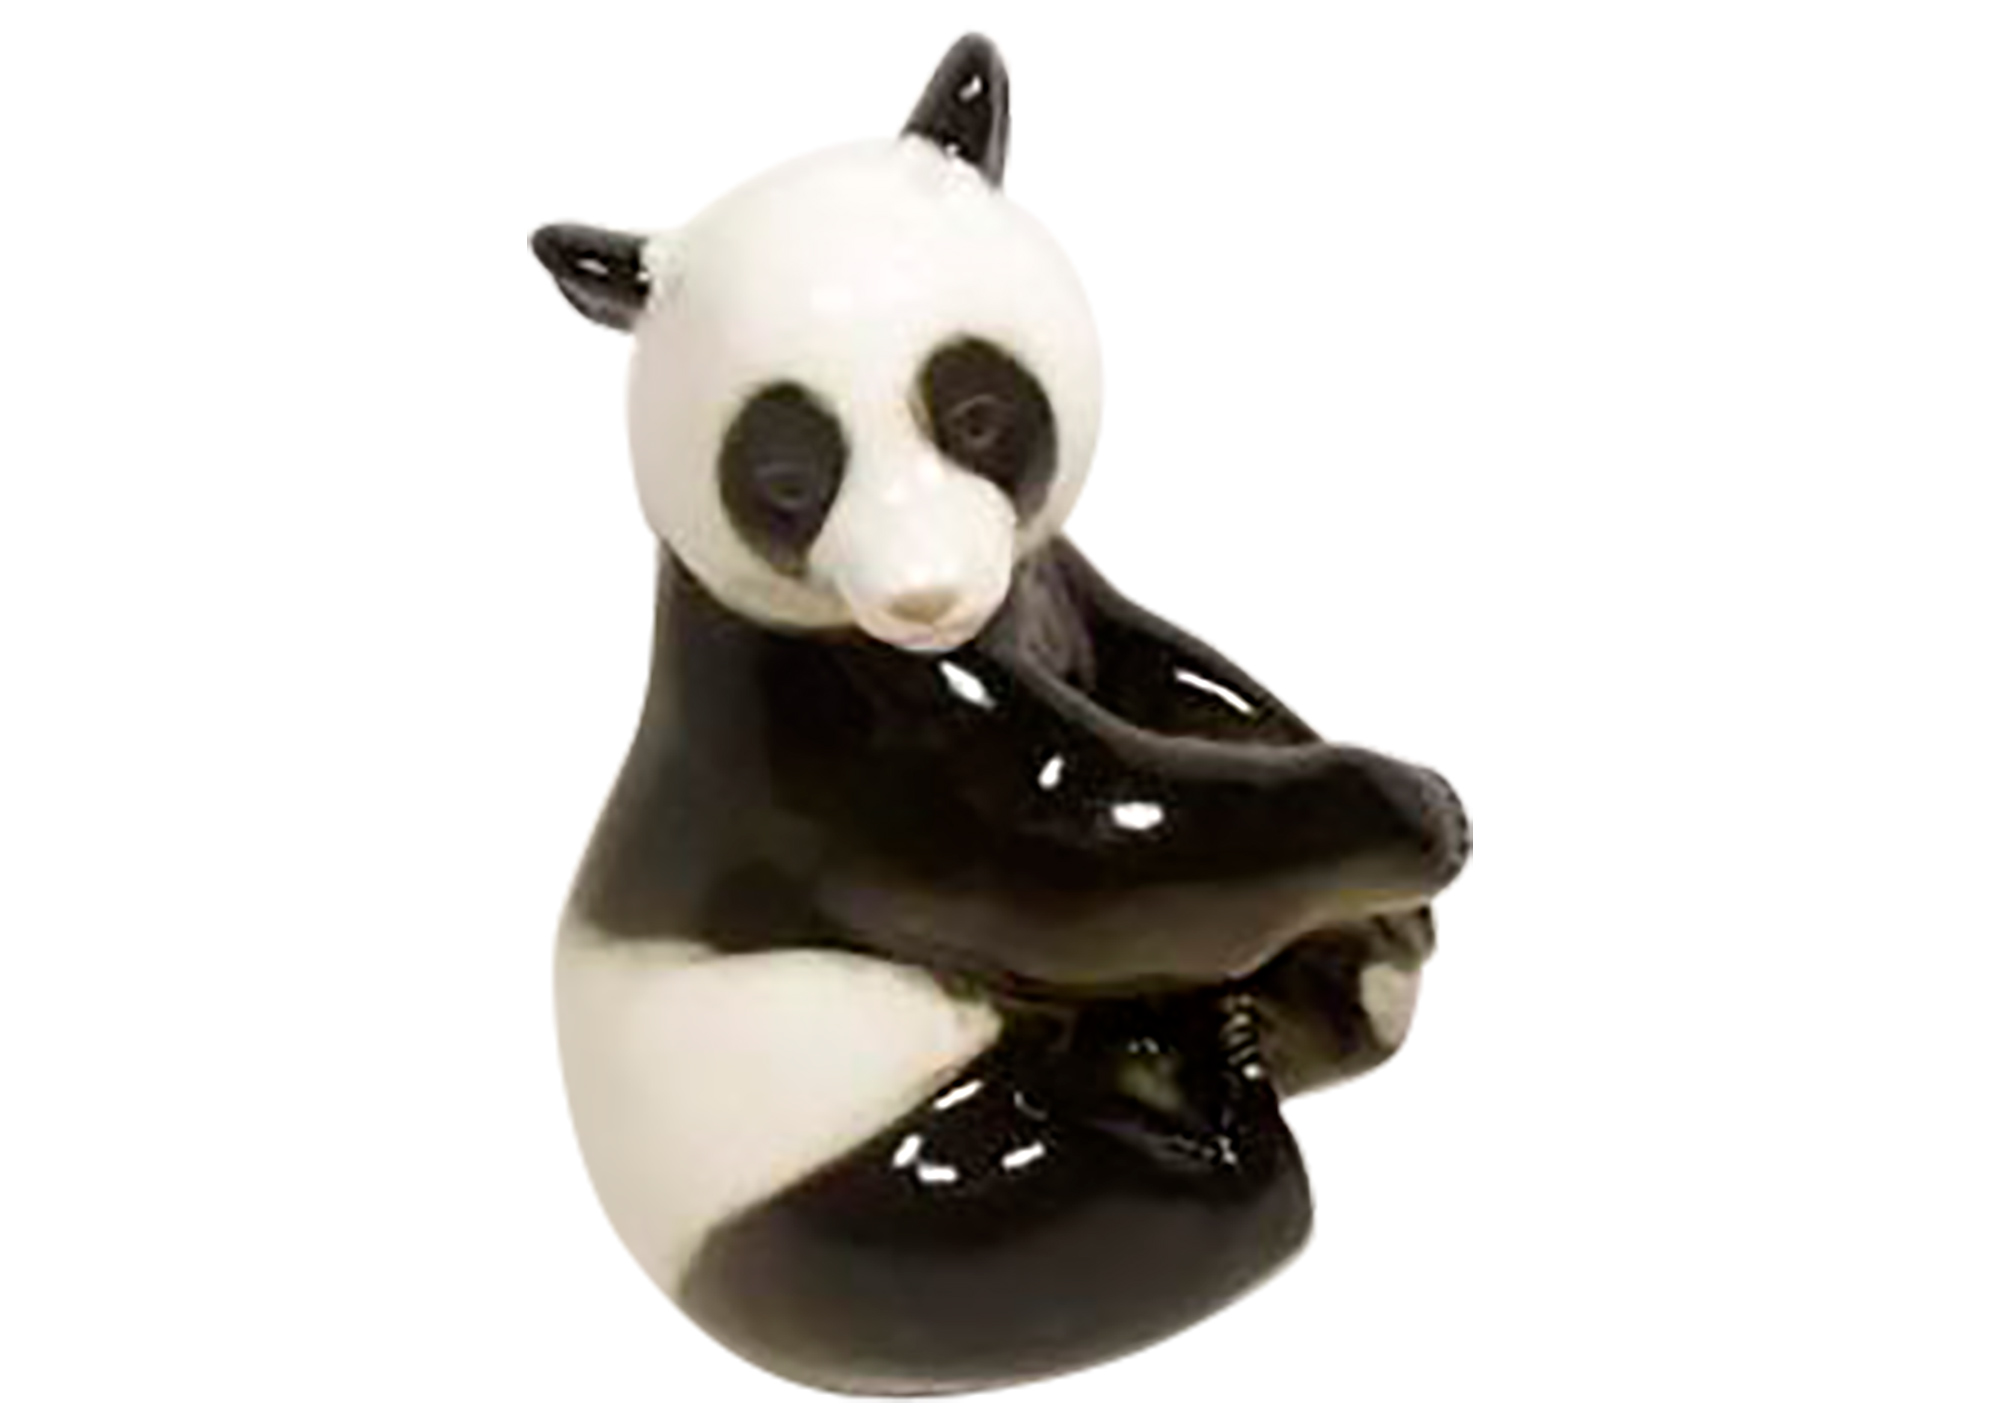 Buy Фарфоровая фигурка «Панда сидящая» at GoldenCockerel.com